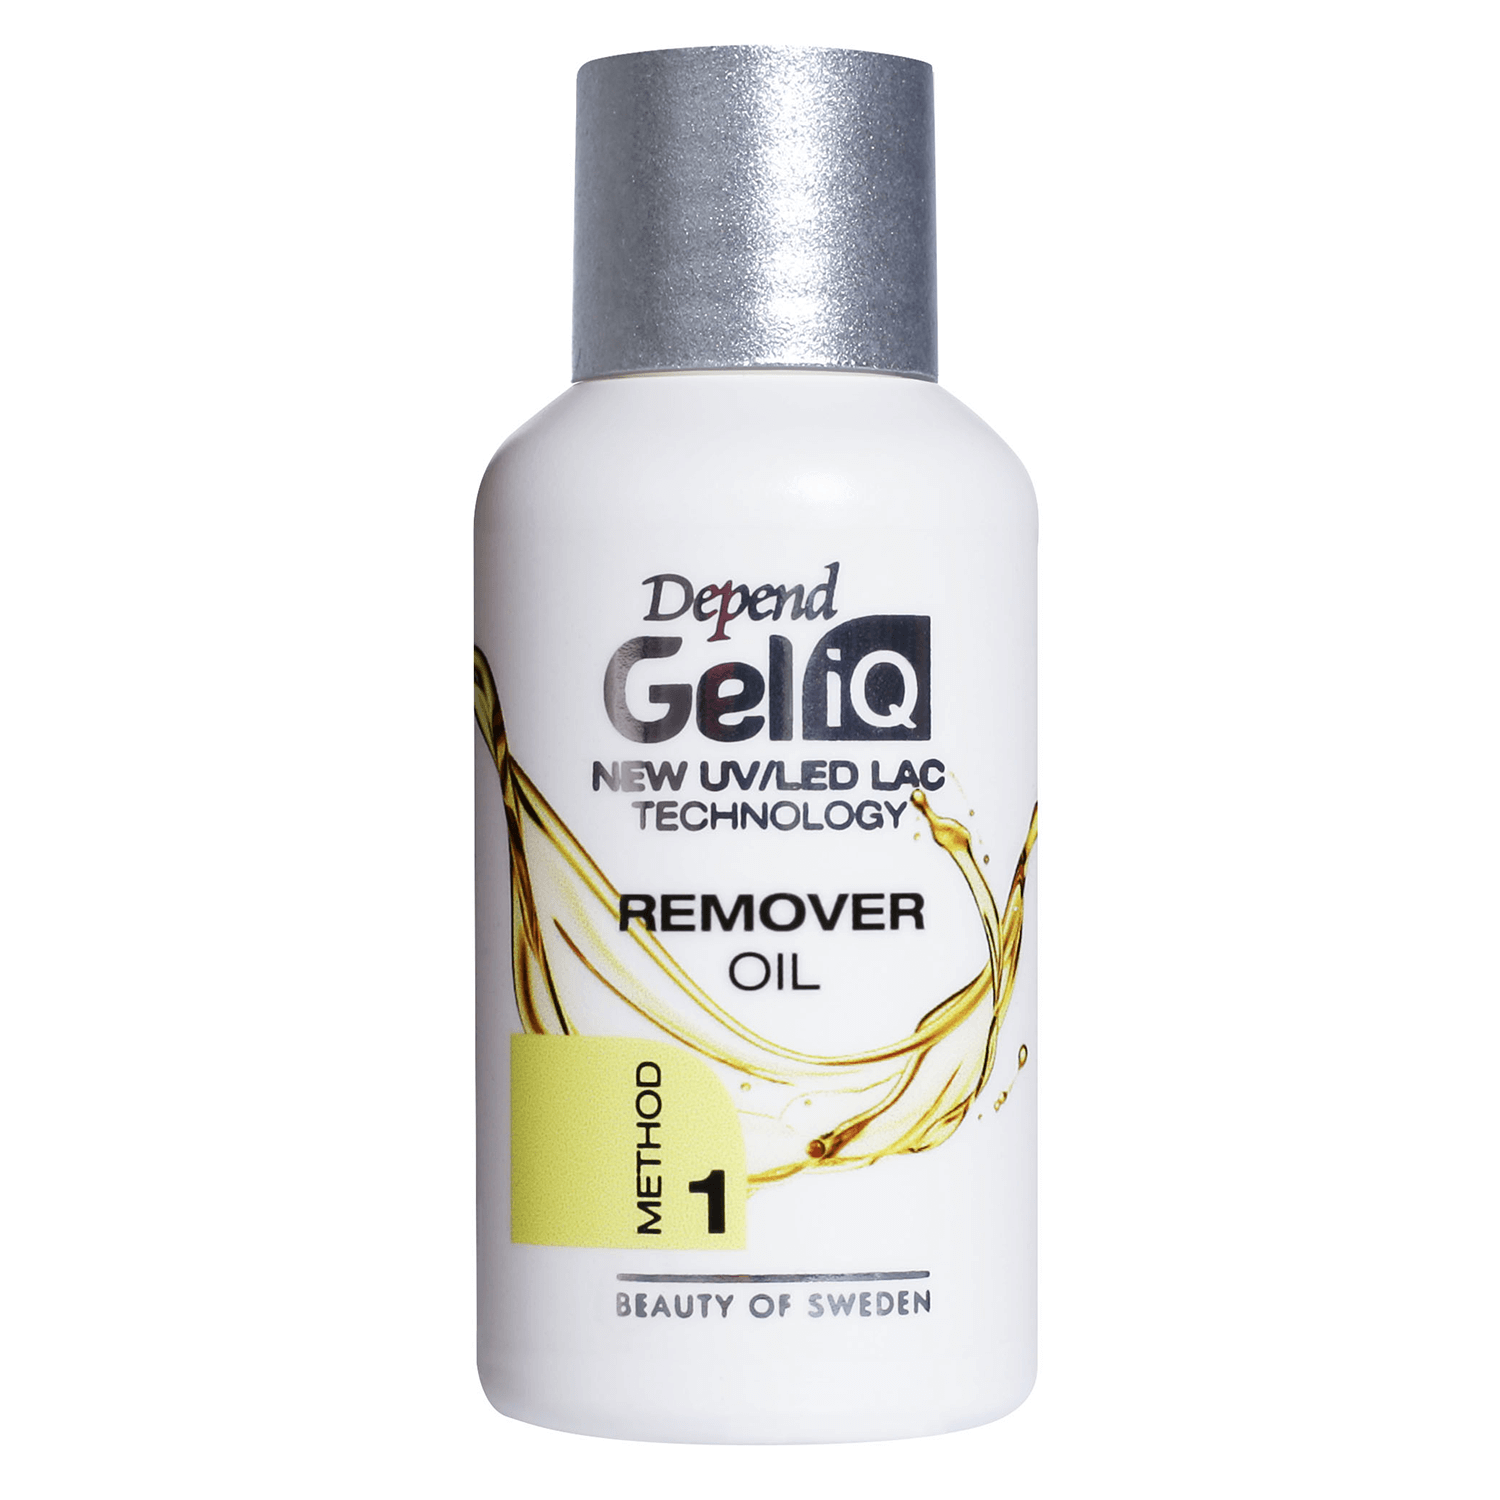 Produktbild von Gel iQ Cleanser & Remover - Remover Oil Method 1